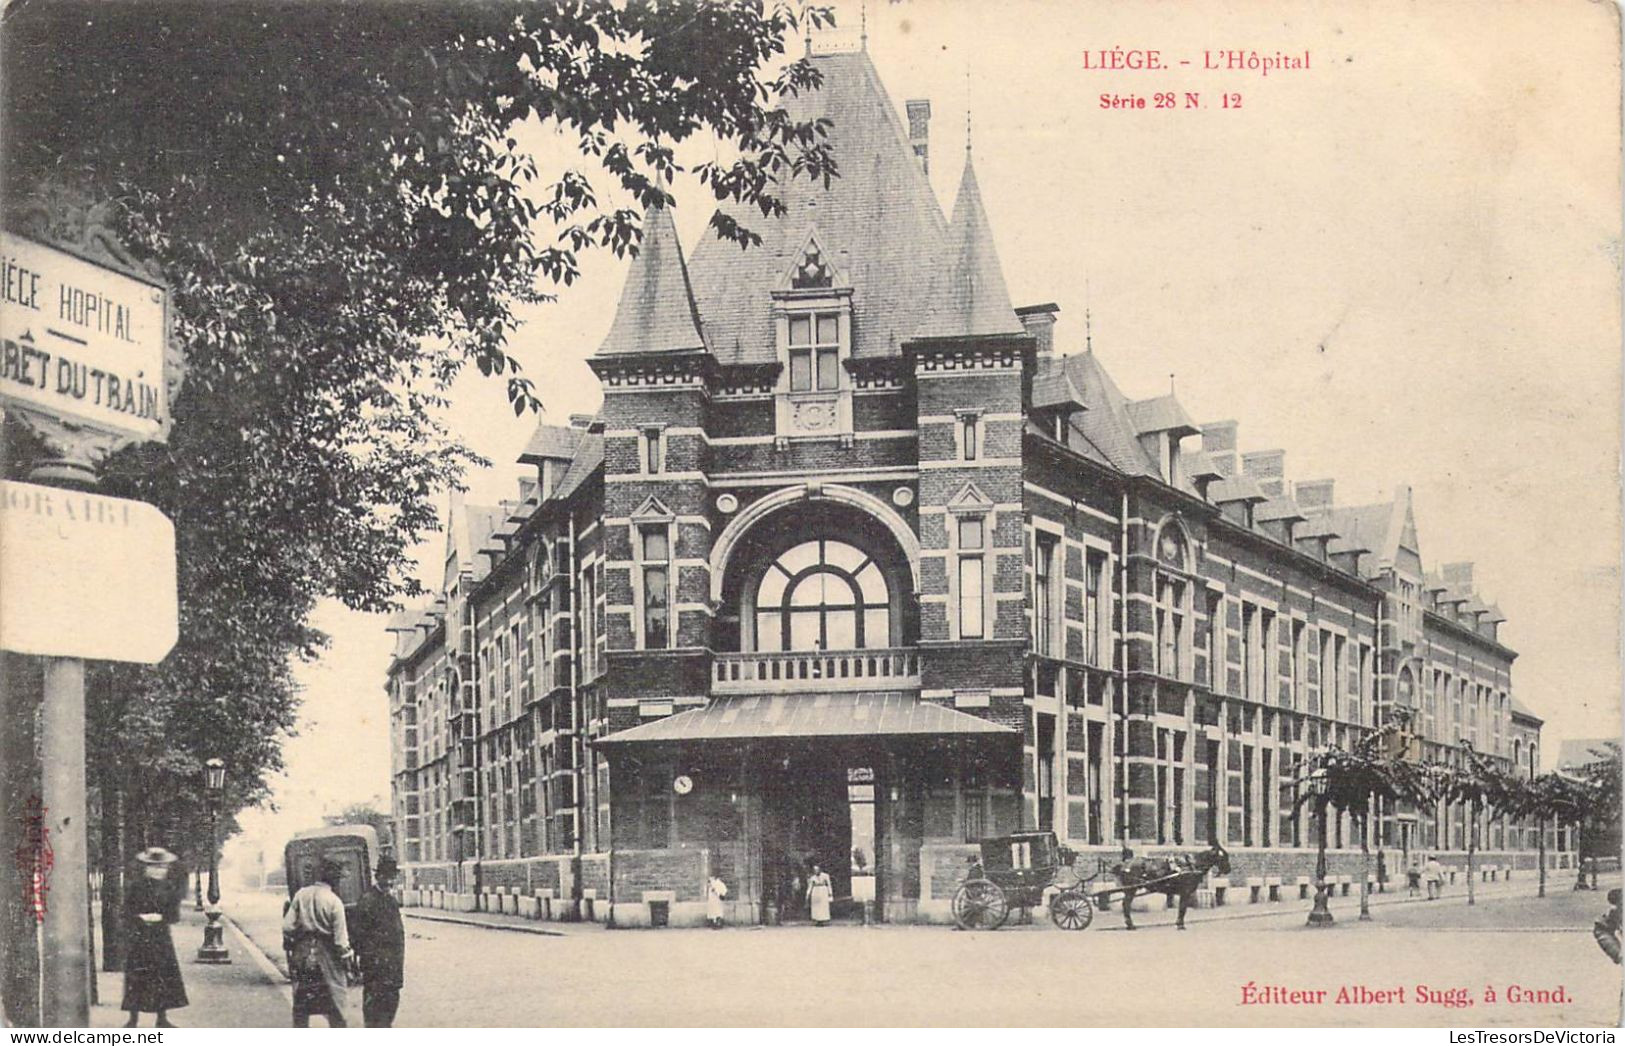 BELGIQUE - Liège - L'Hôpital - Carte Postale Ancienne - Luik